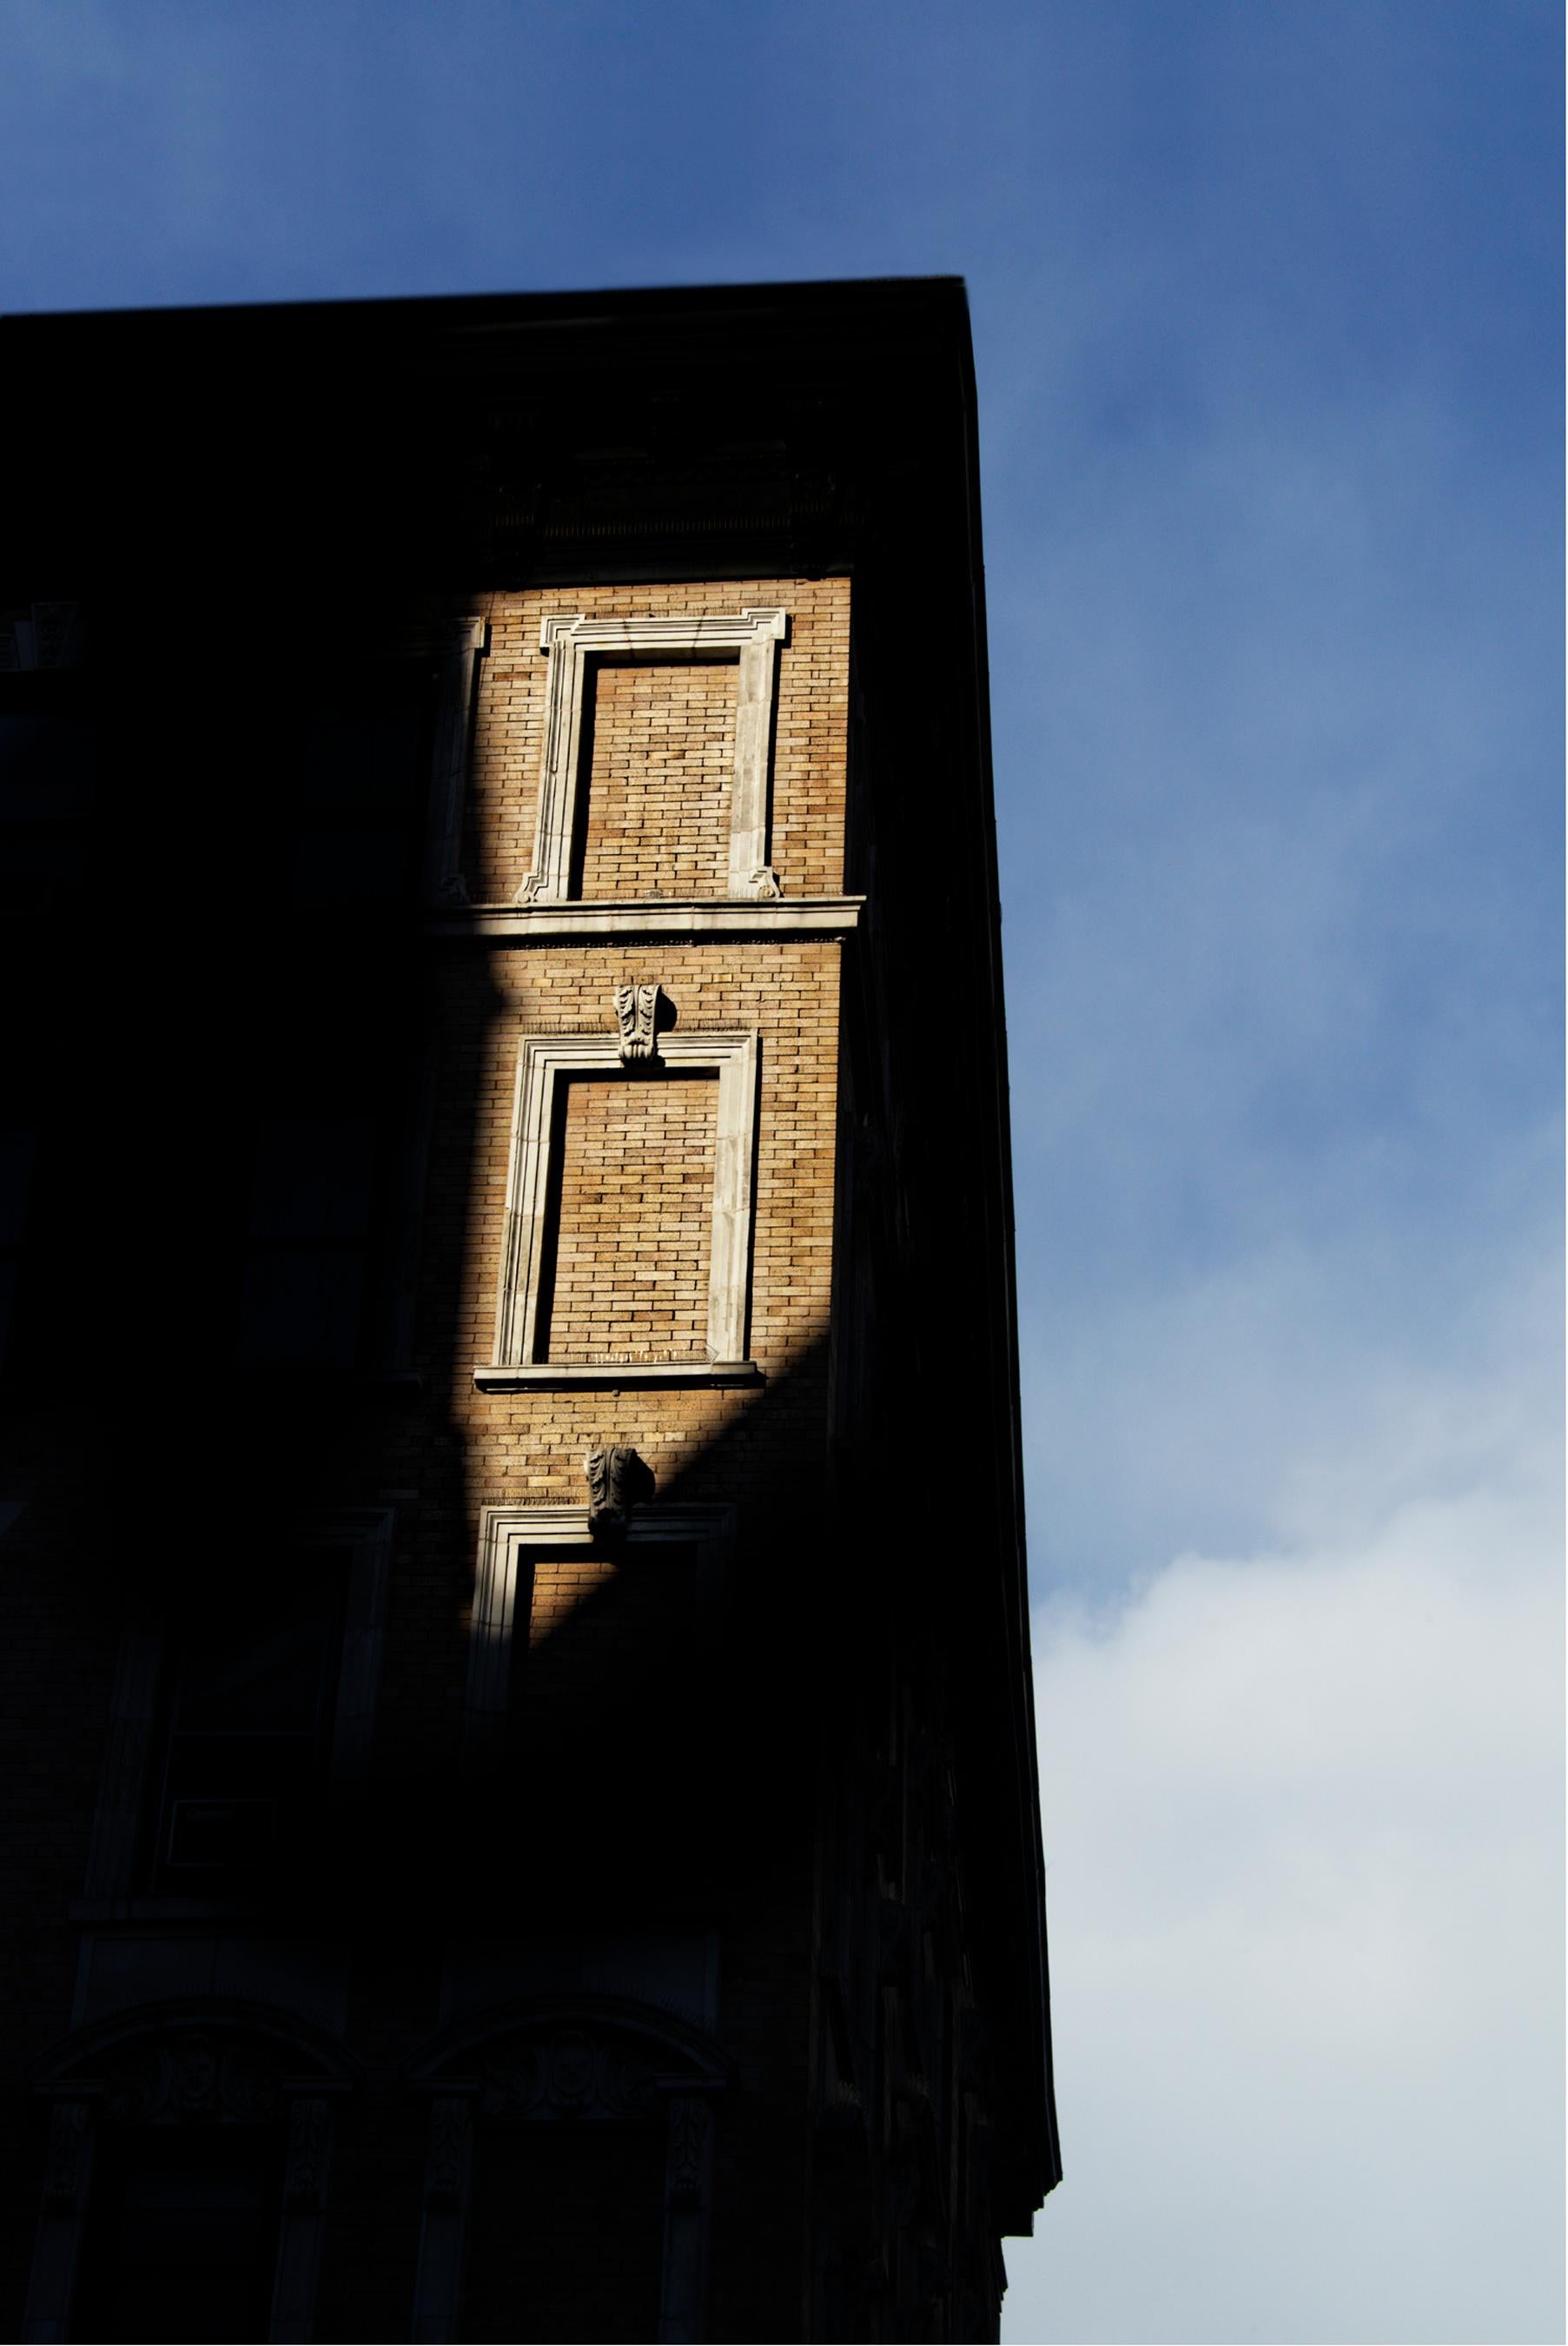 Color Photograph Bob Krasner - « Cloutées fenêtres », photographie, ville, architecture, ombre, brique, ciel, lumière du soleil